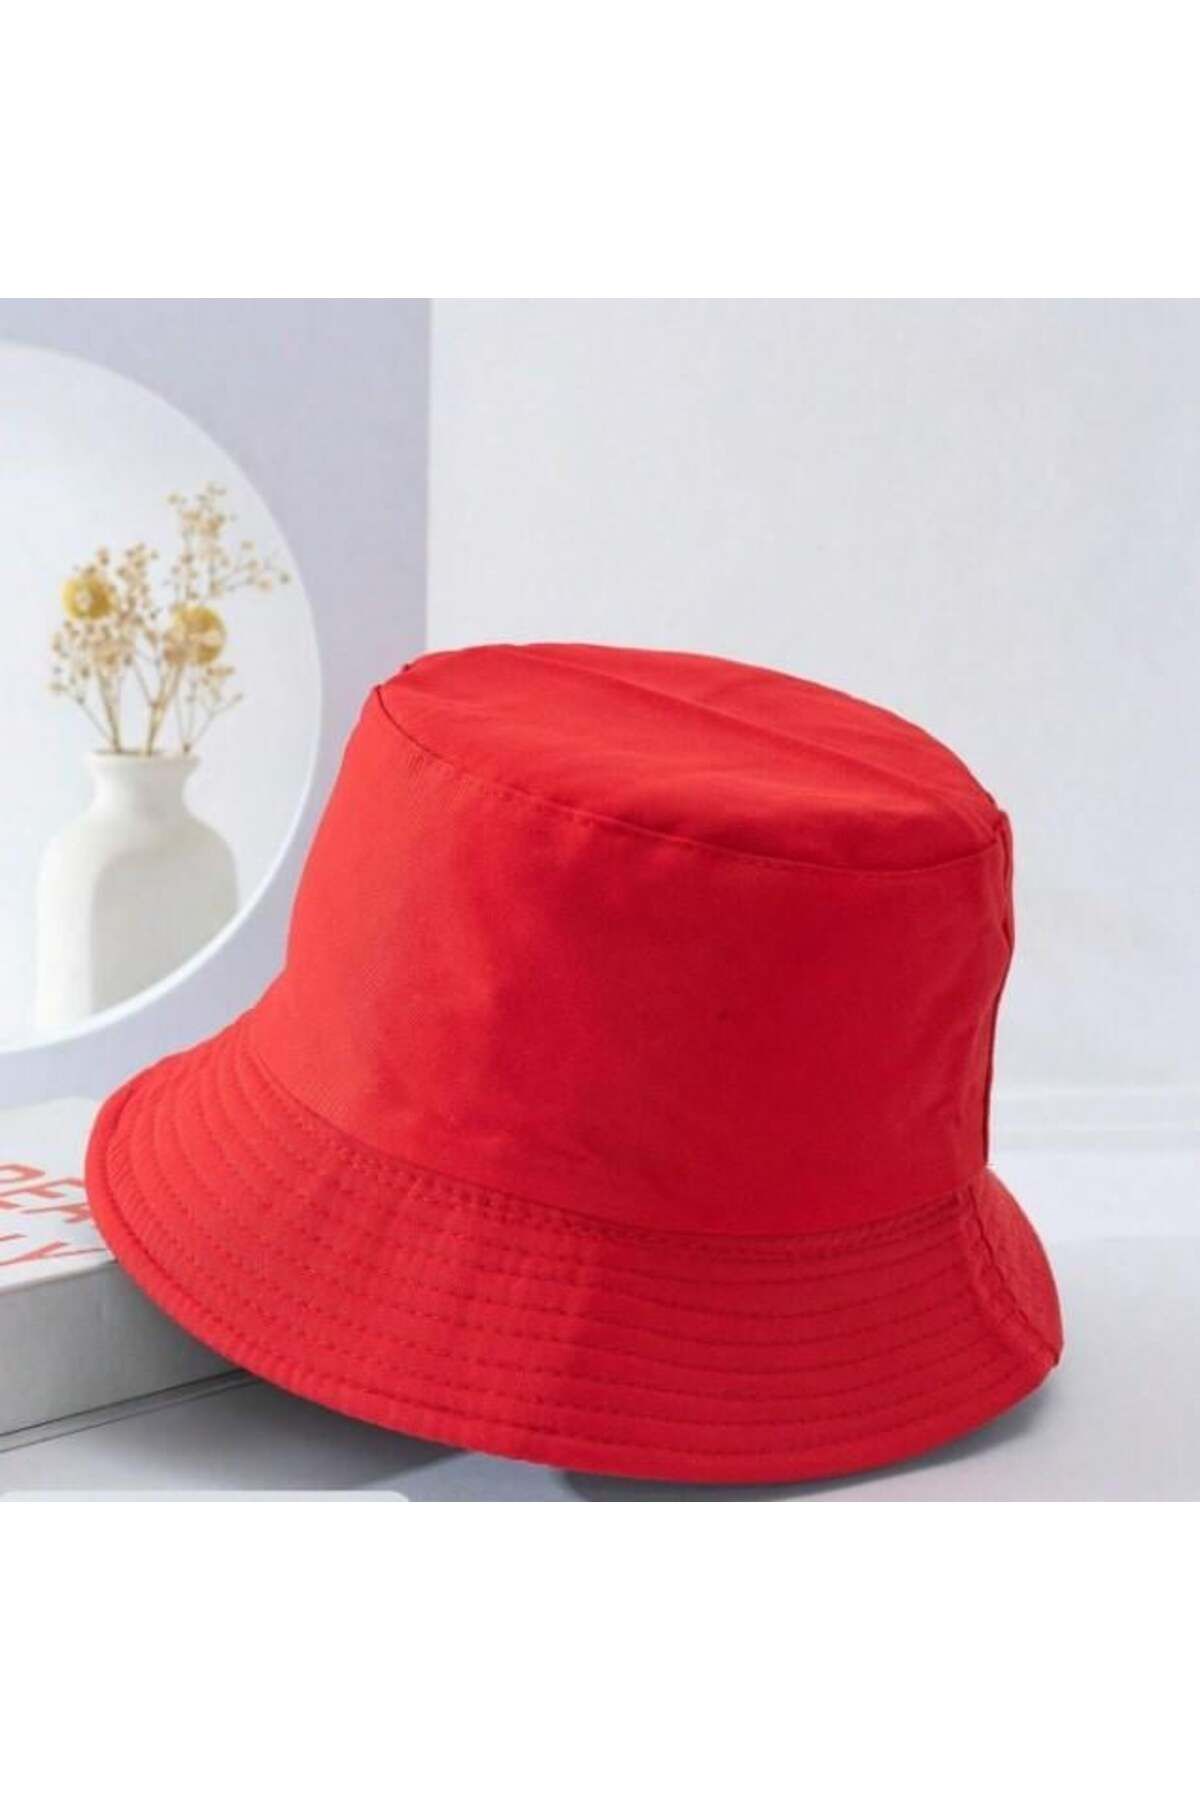 Gofeel Day Light Kırmızı Bucket Balıkçı Şapka